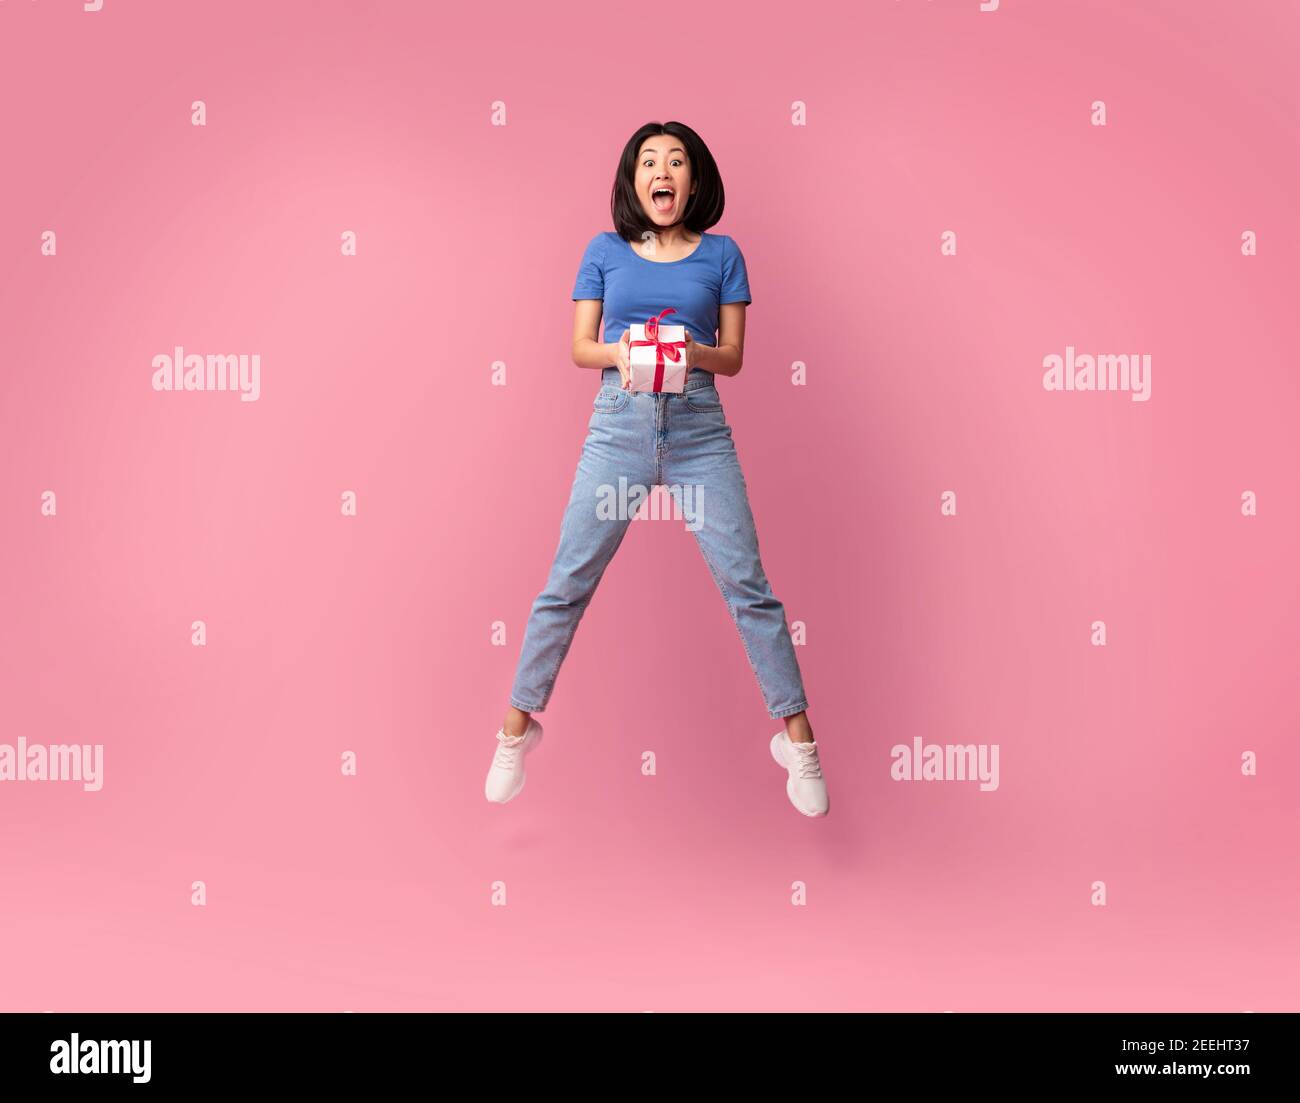 Saltando emocionada dama asiática sosteniendo la caja actual Foto de stock